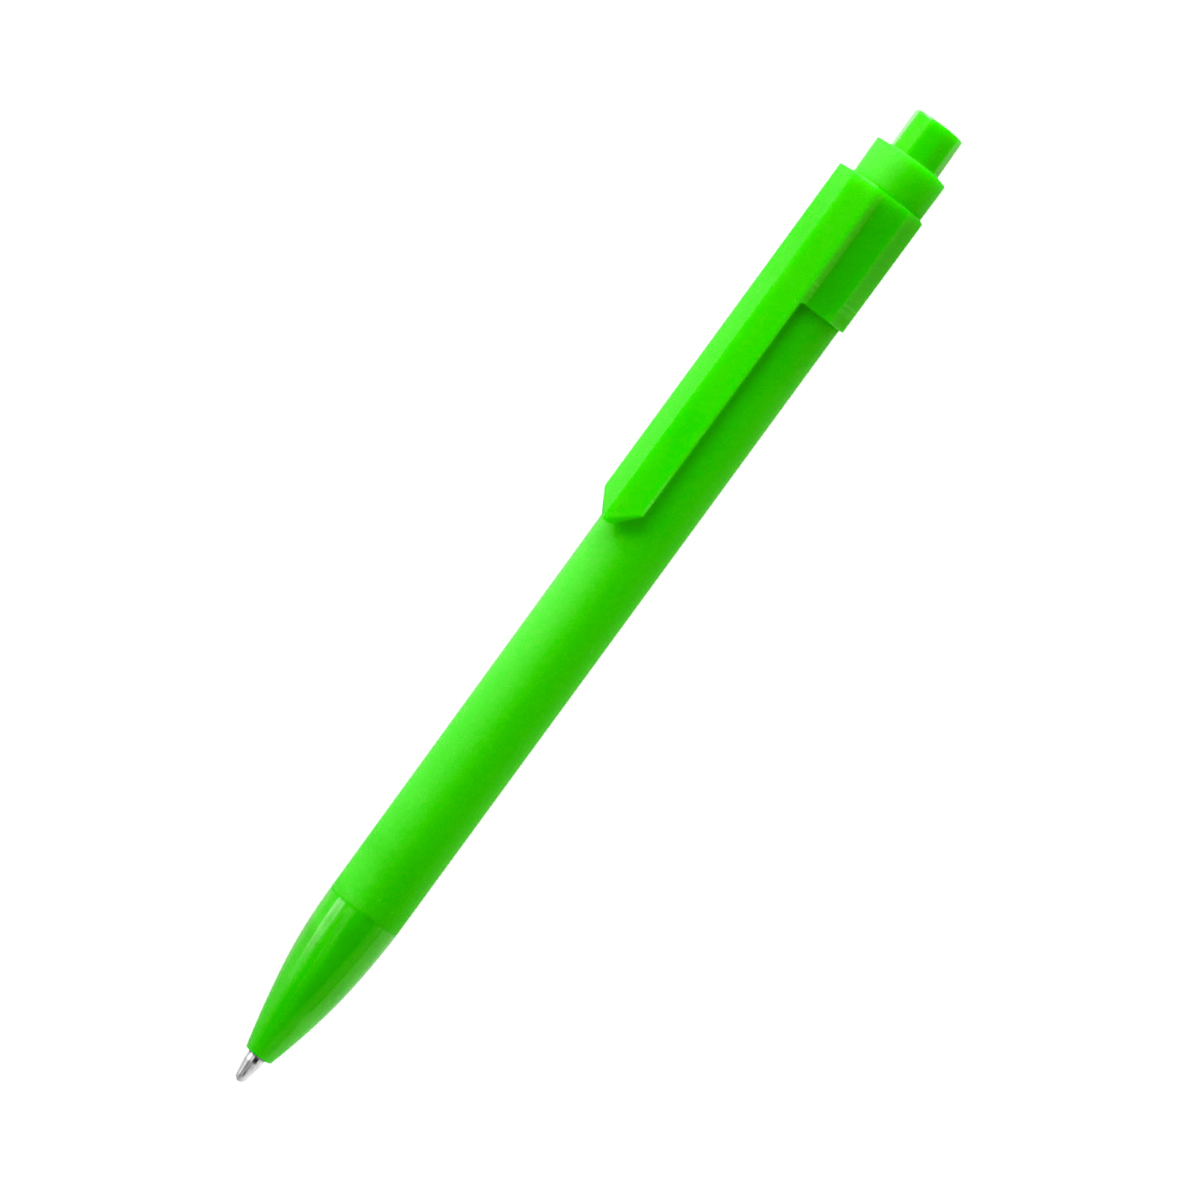 Ручка пластиковая Pit Soft софт-тач, желтая